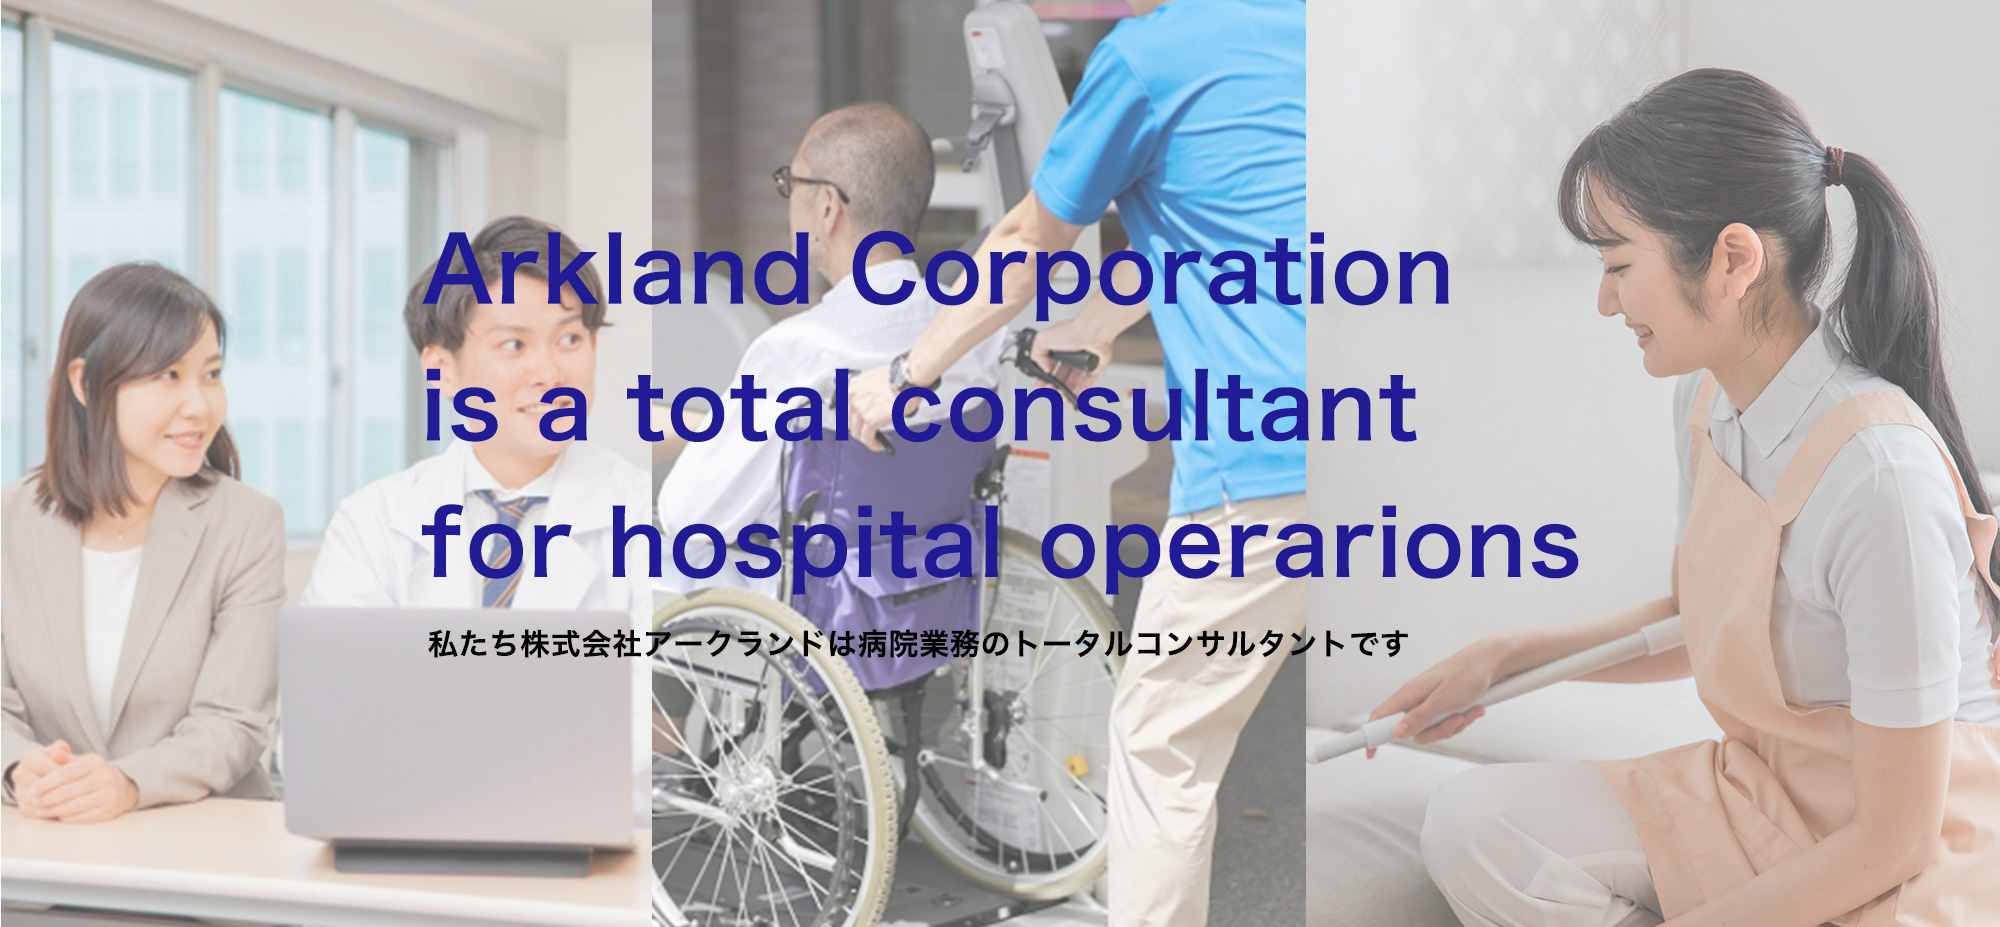 私たち株式会社アークランドは病院業務のトータルコンサルタントです。